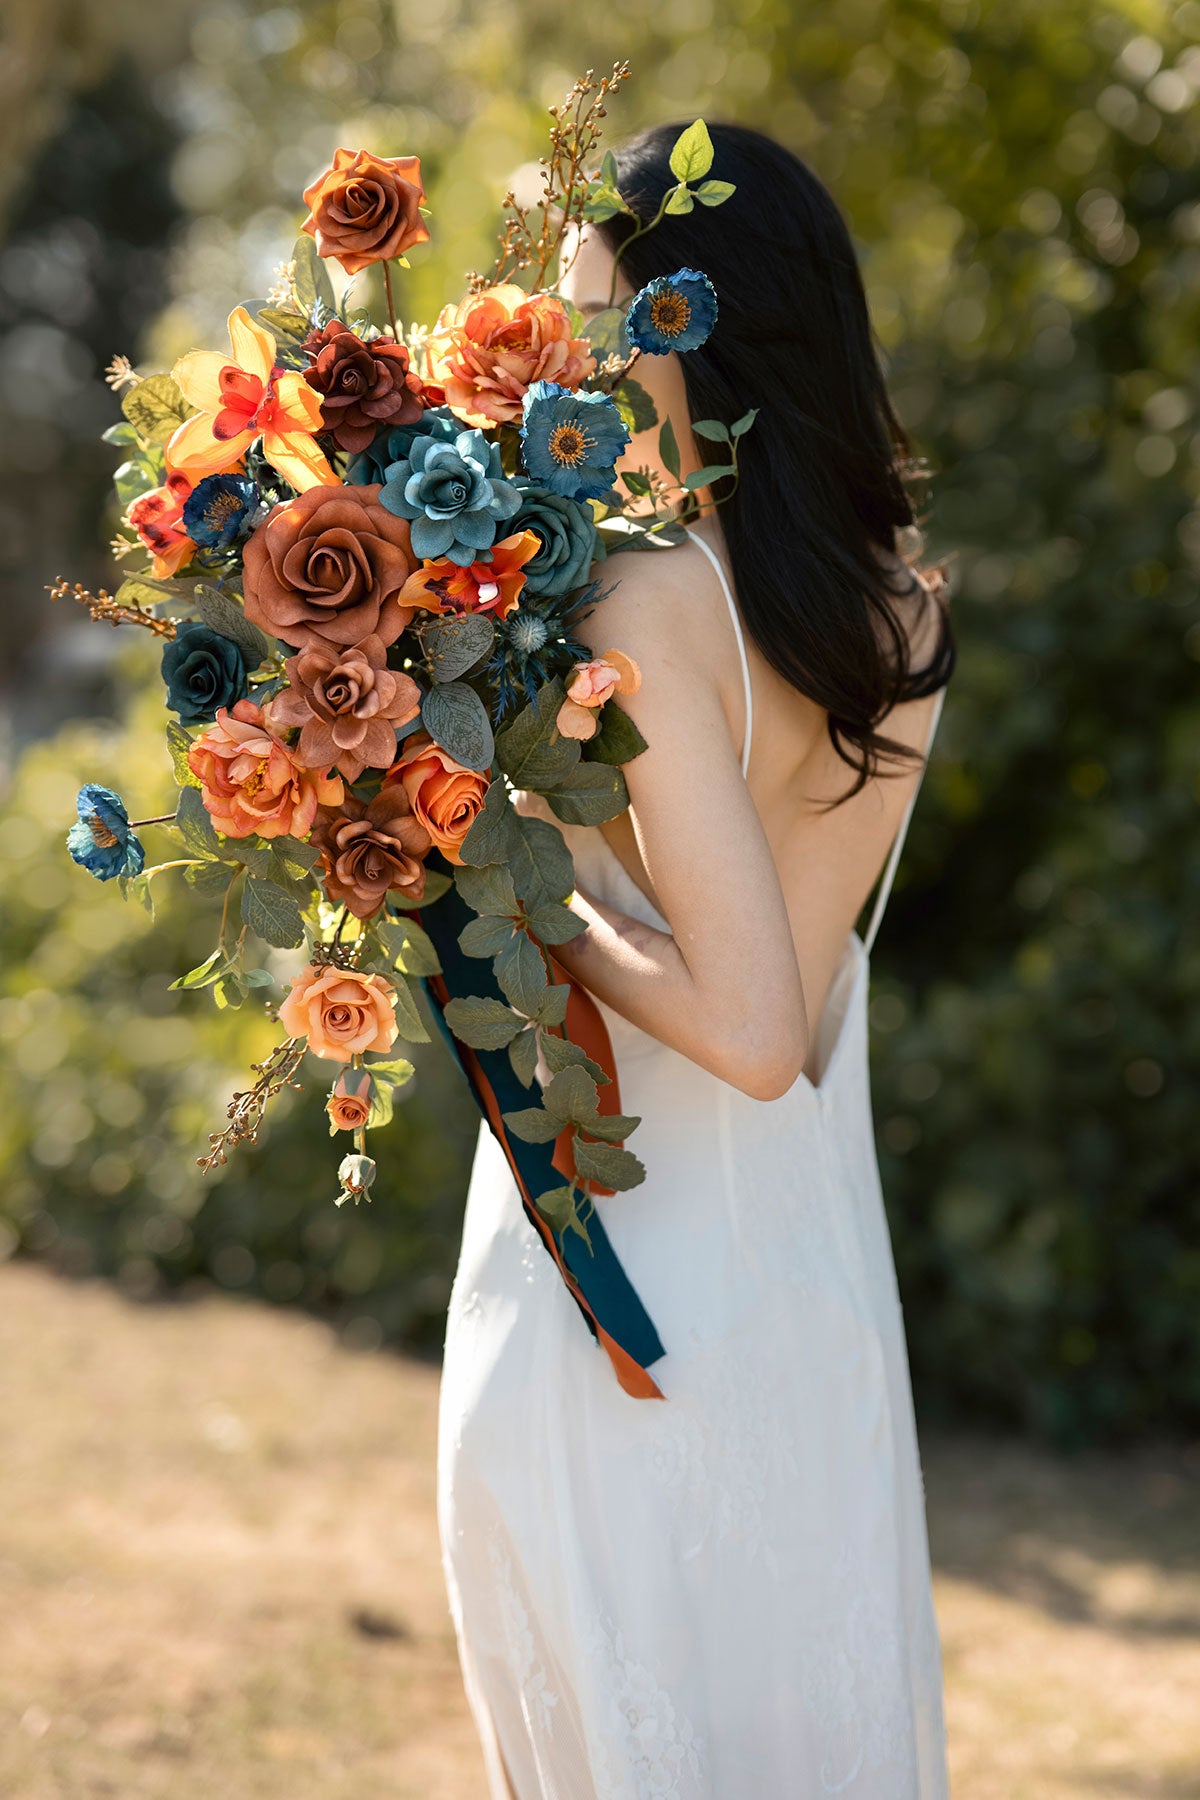 Pre-Arranged Wedding Flower Packages in Dark Teal & Burnt Orange